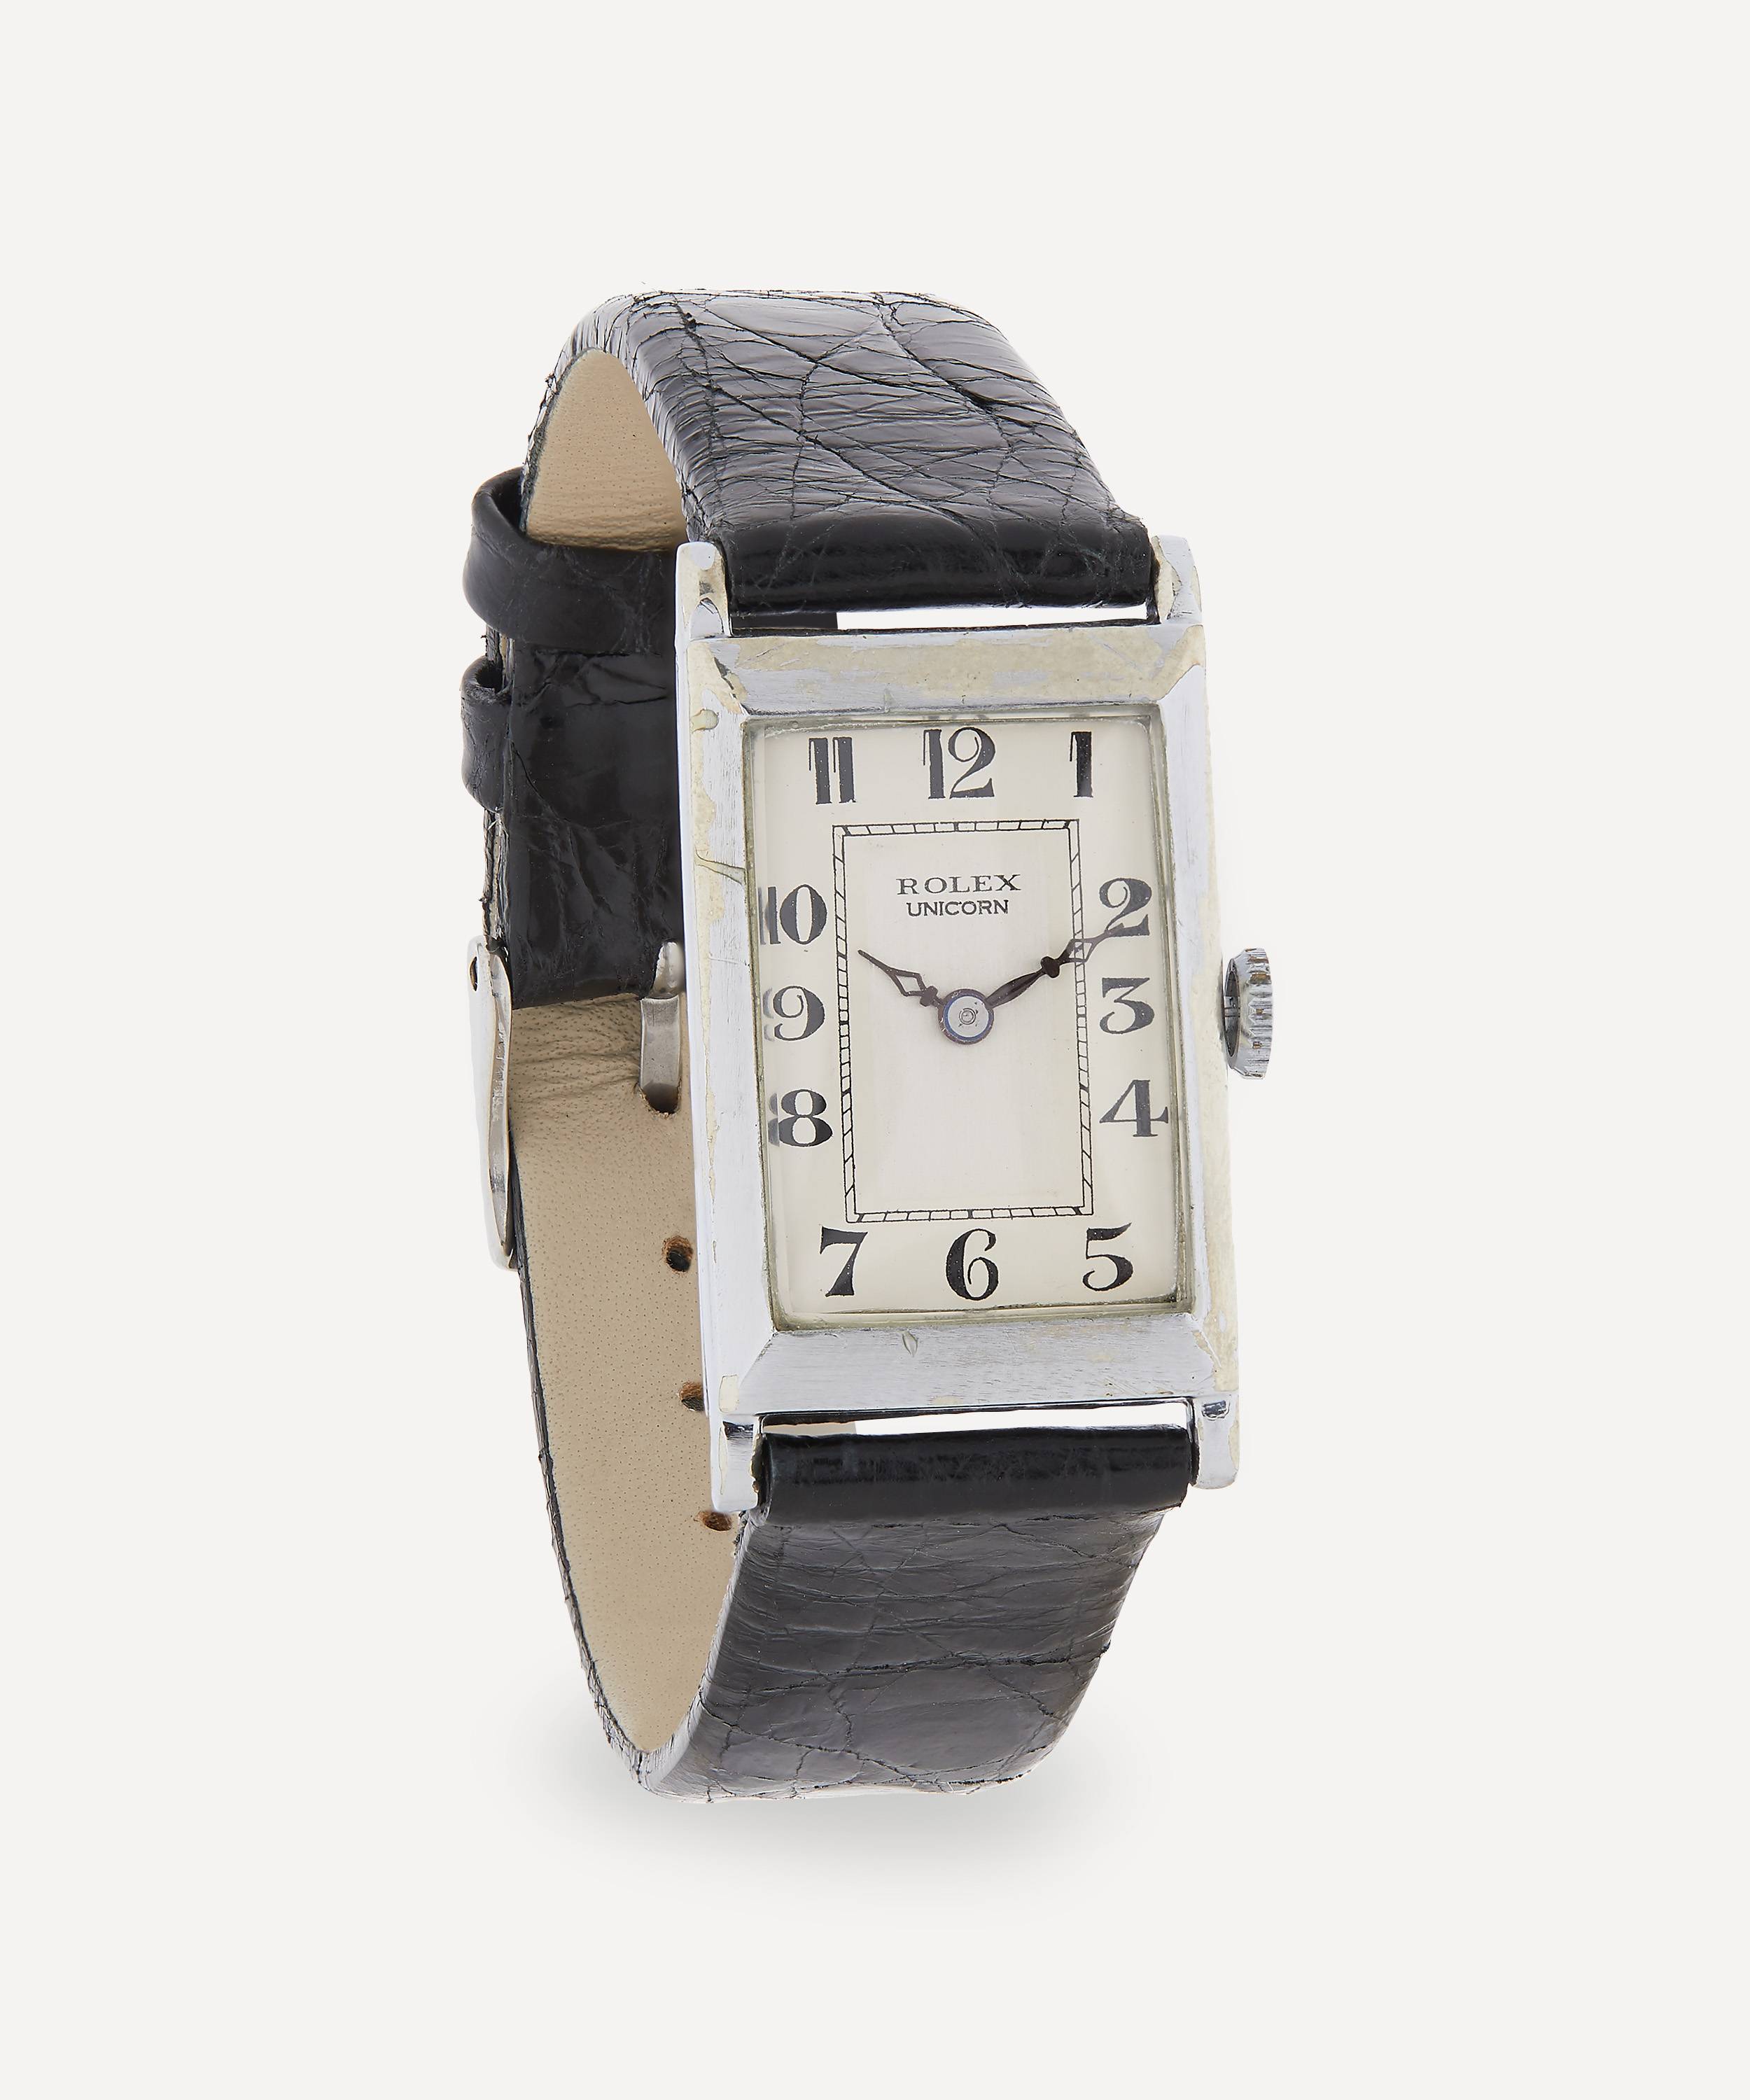 Vintage Rolex Unicorn White Metal Watch |